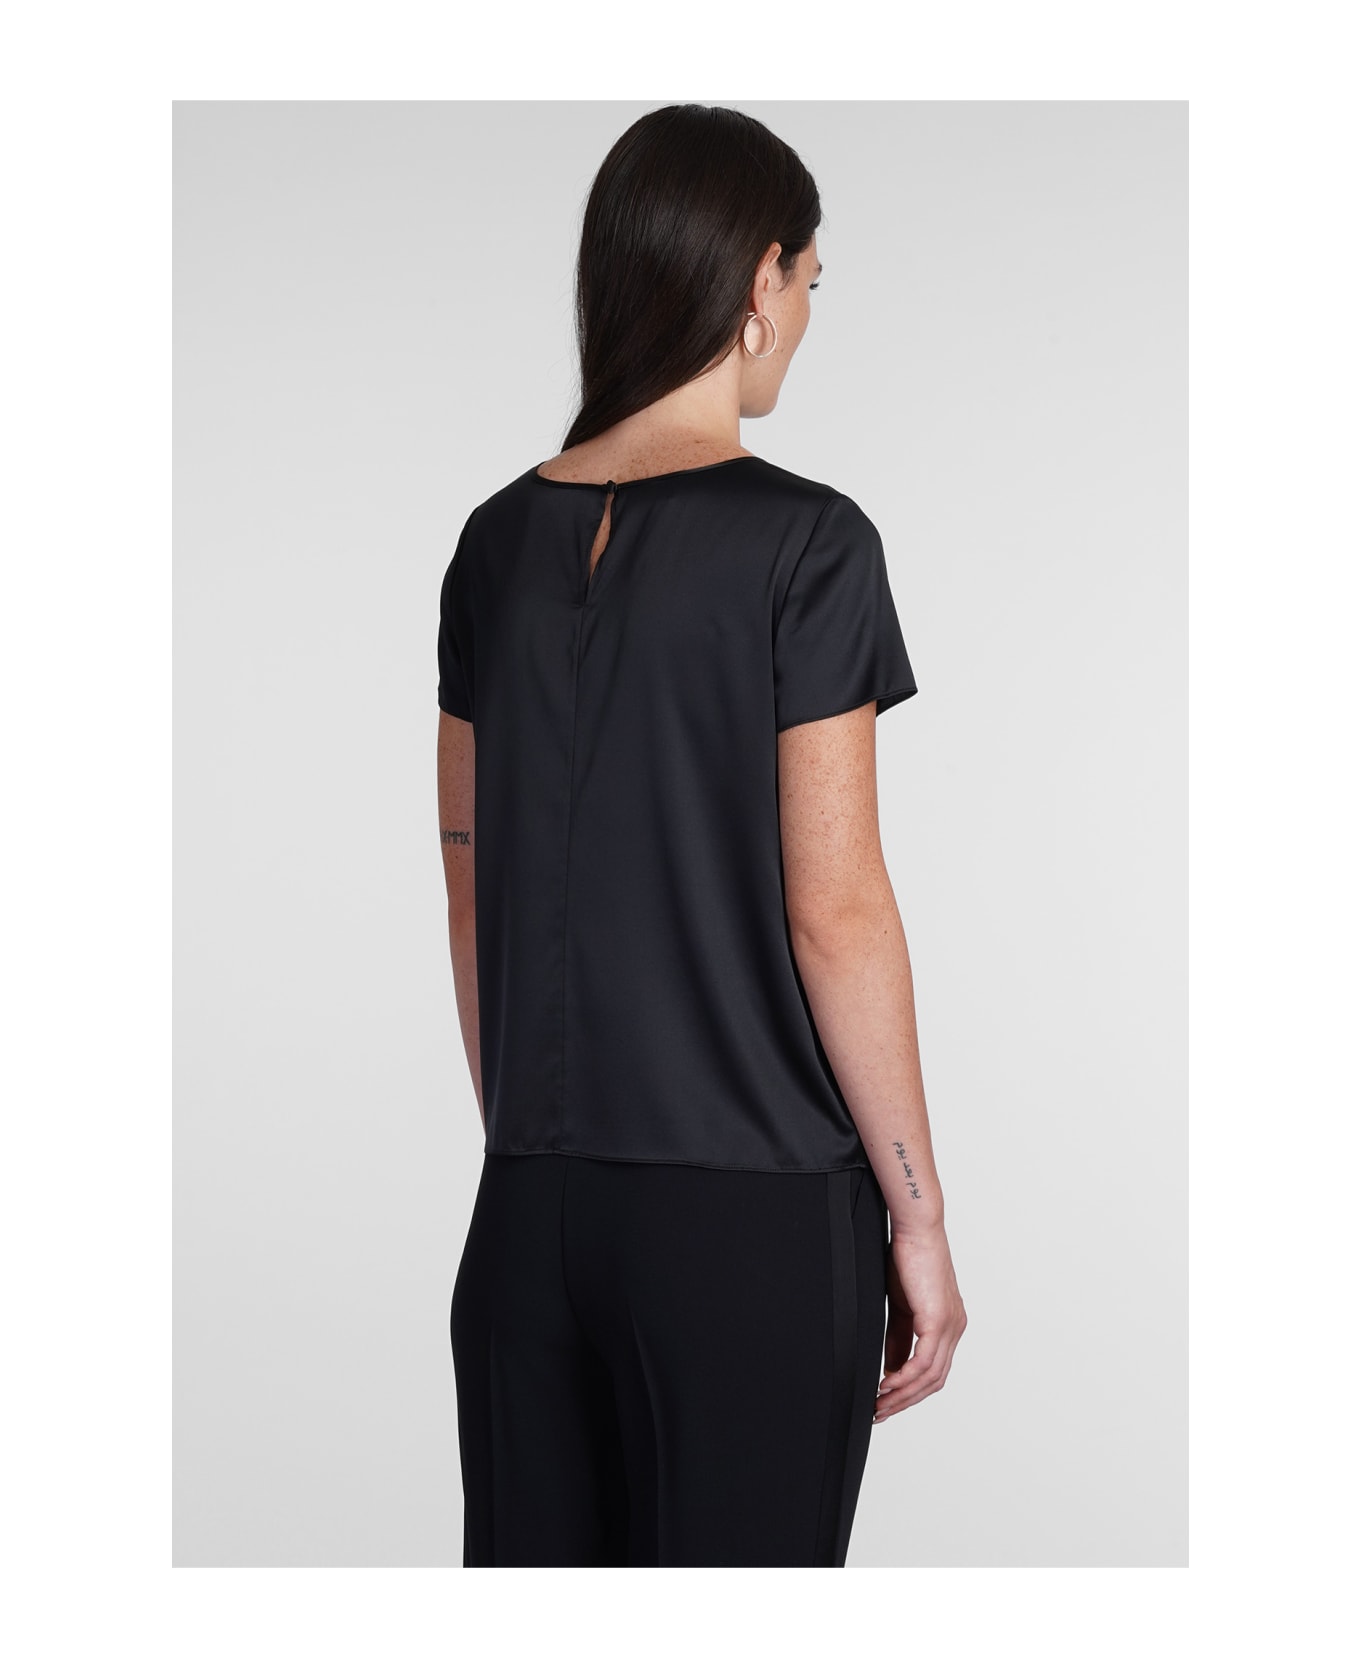 Emporio Armani Blouse In Black Silk - Black Tシャツ